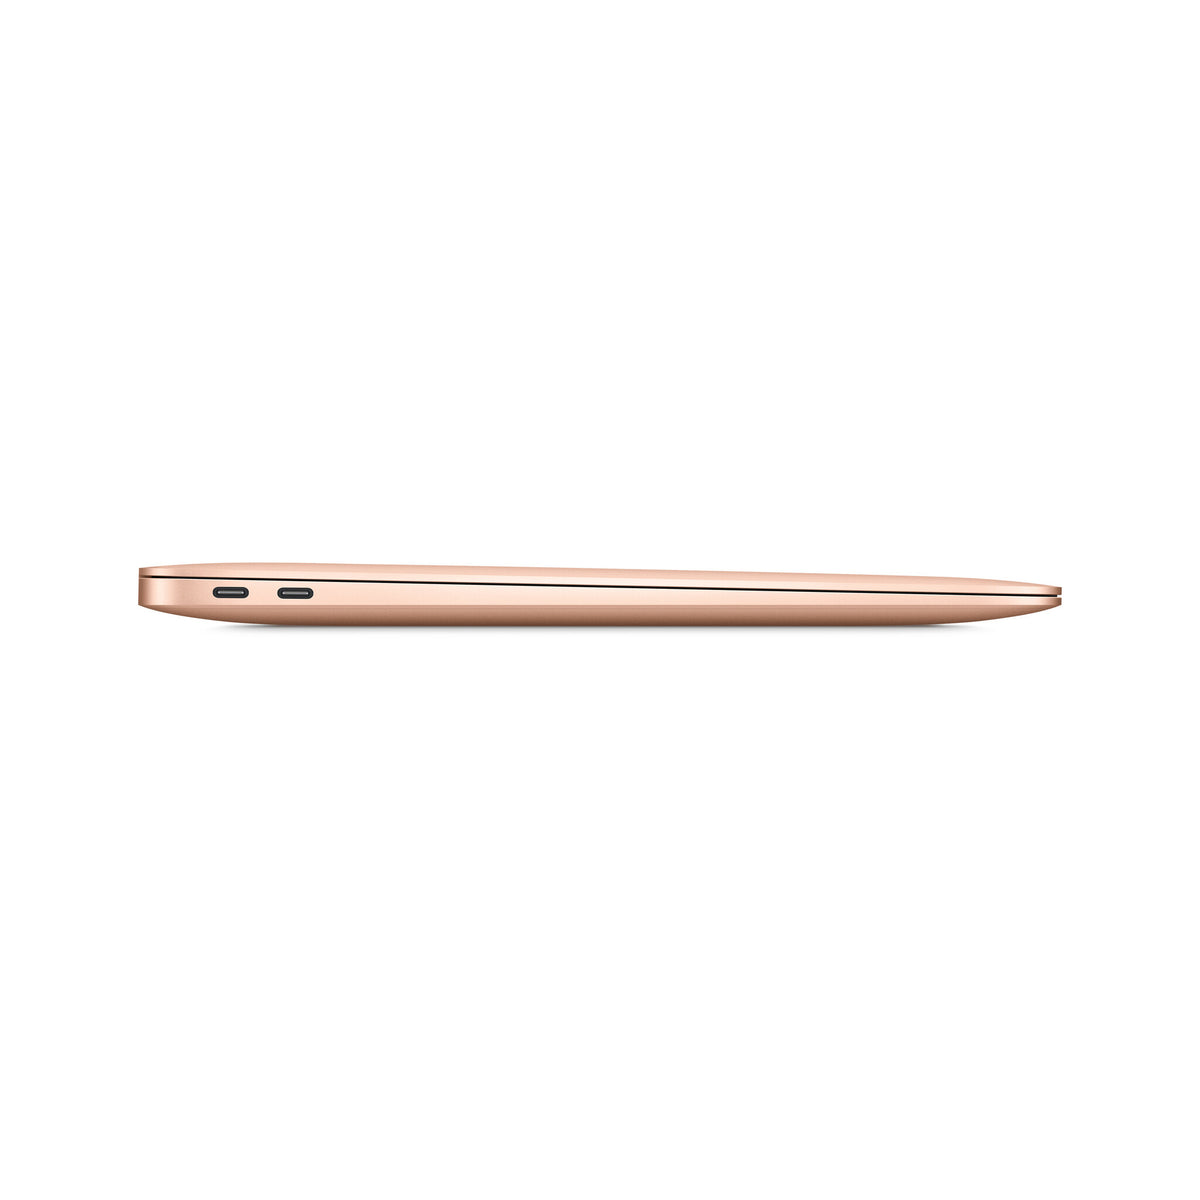 Apple MacBook Air (2020) - 33.8 cm (13.3&quot;) - M1 - 256GB - 8GB - Gold